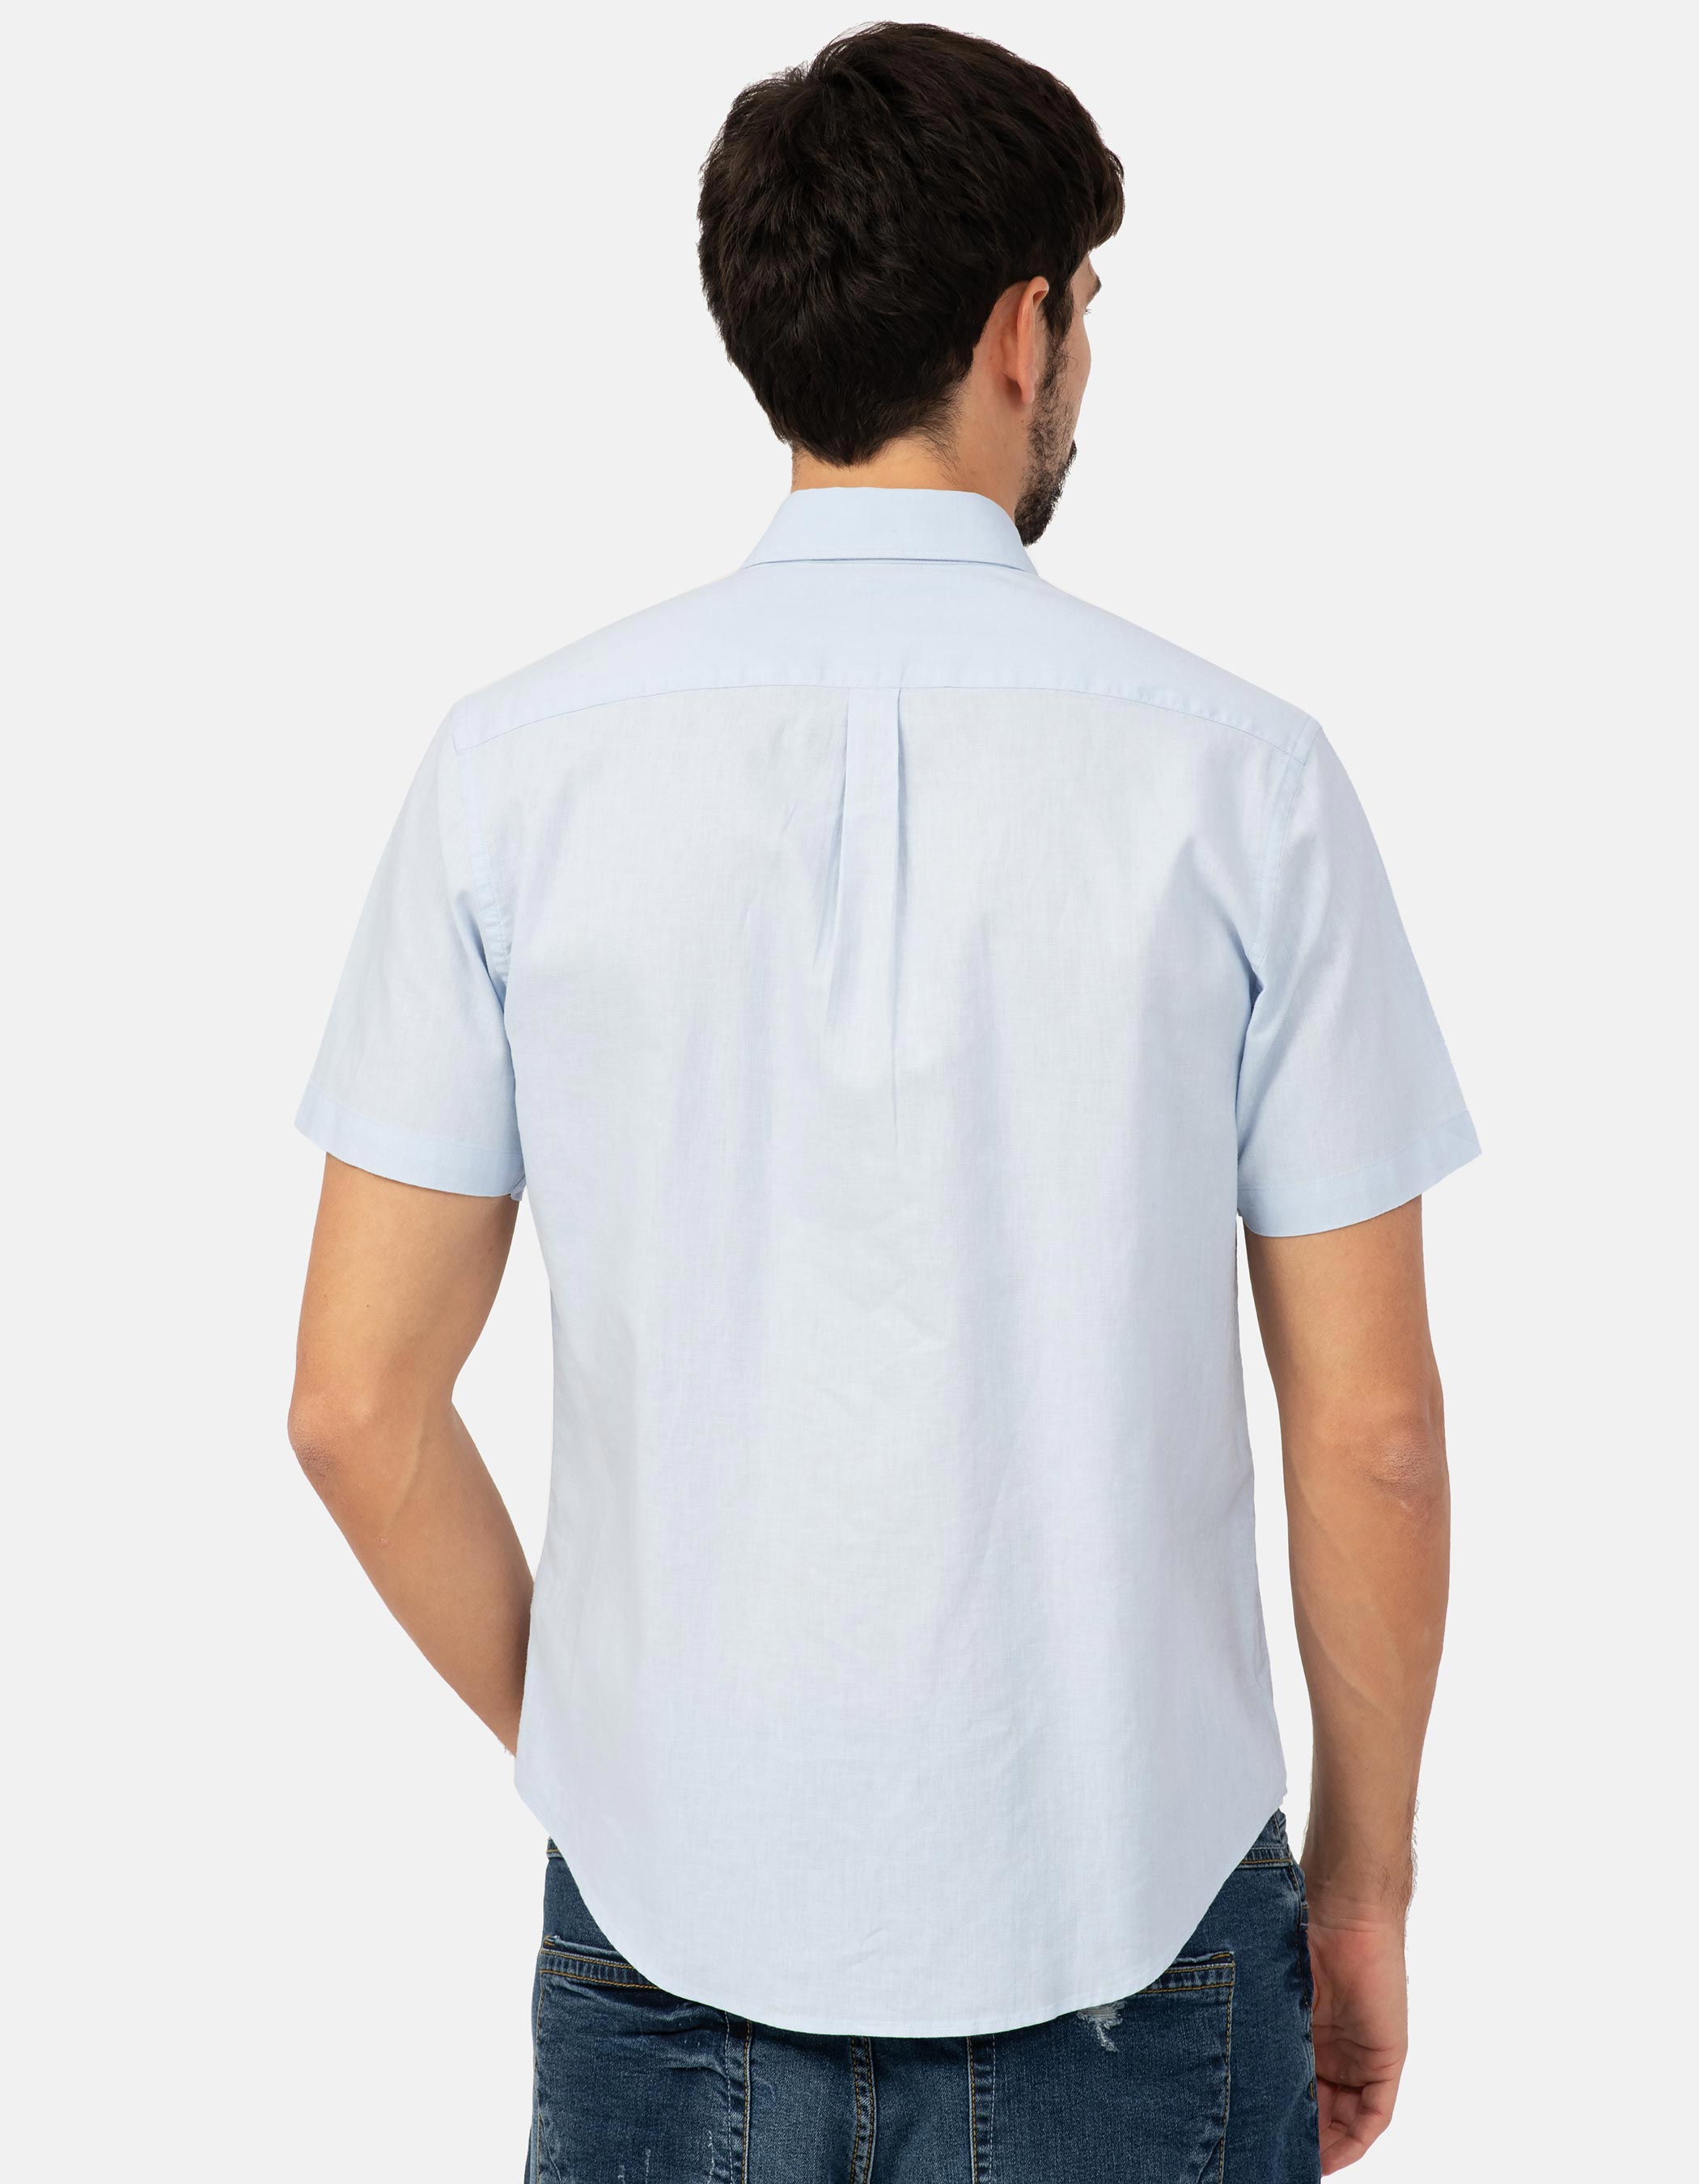 Linen and cotton short sleeve shirt. 5